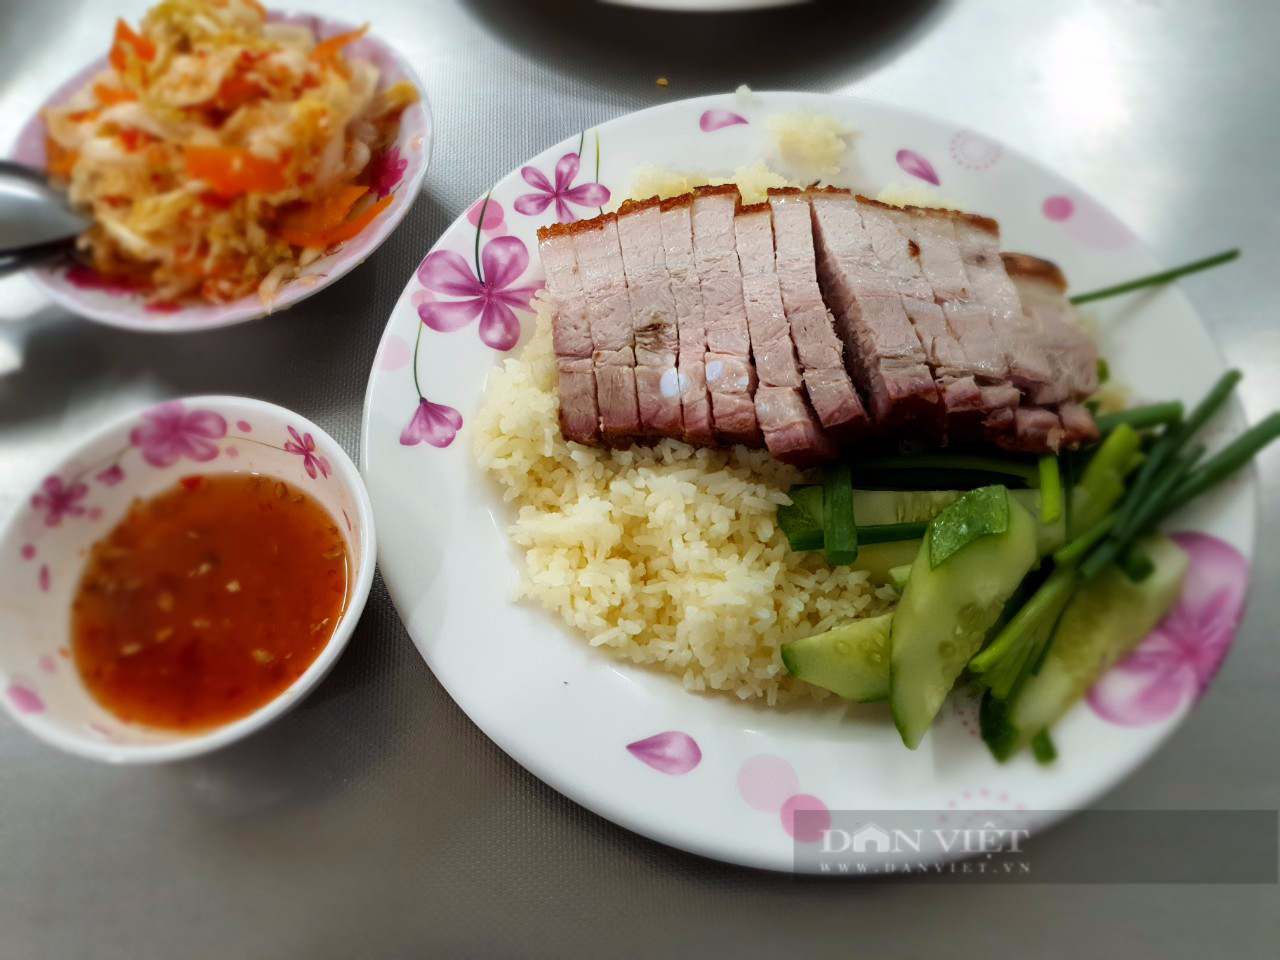 Quán cơm gà nổi tiếng khu Tân Định, ngoài gà luộc có cả heo quay, phá lấu, kimchi kiểu Việt Nam - Ảnh 3.